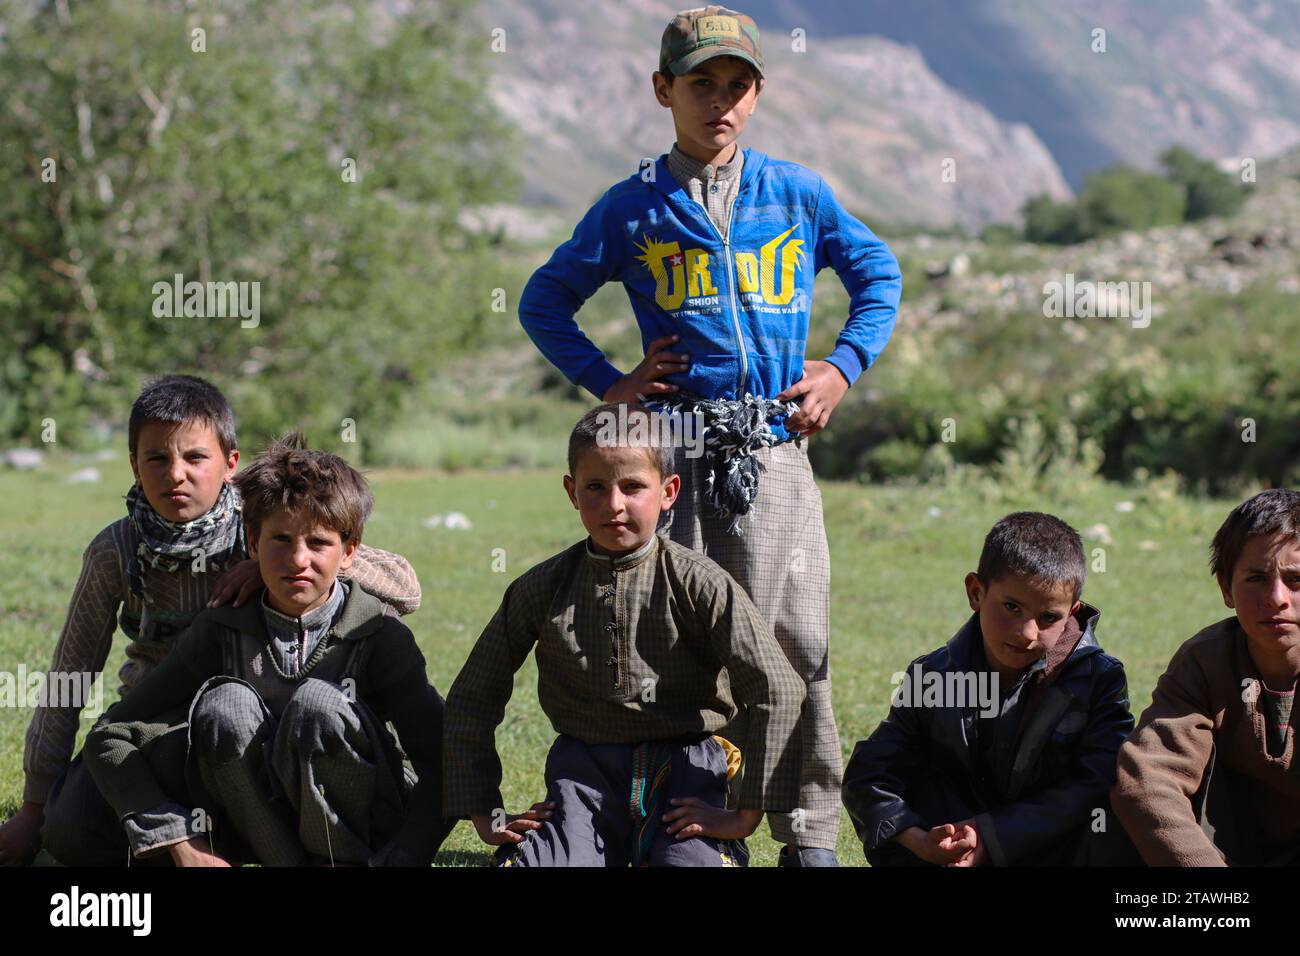 Felici bambini afghani in difficoltà, guardando la macchina fotografica e sorridendo. Foto Stock